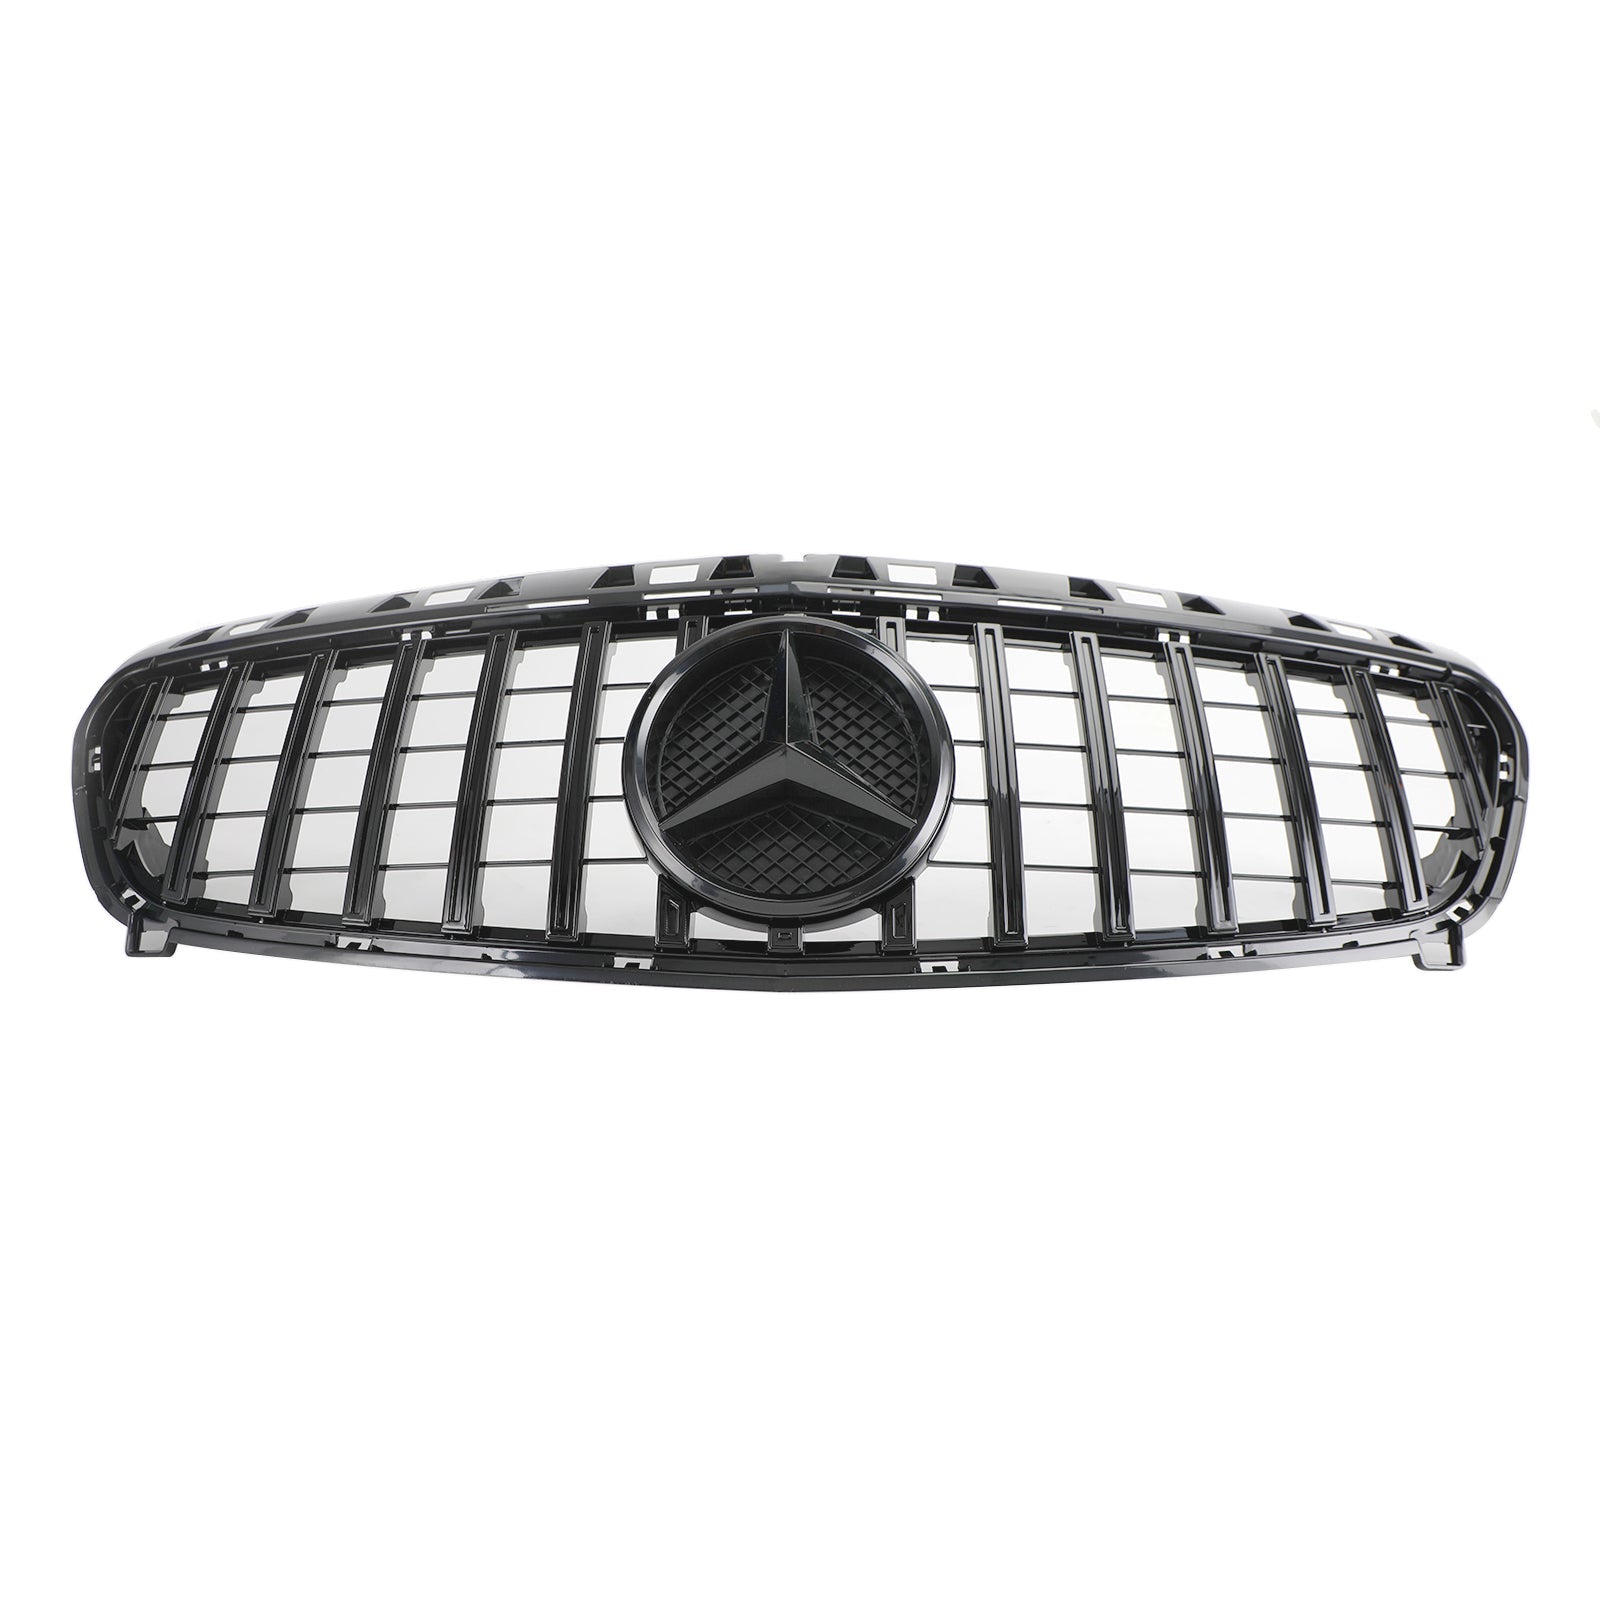 2013-2015 Mercedes Benz Classe A W176 Griglia griglia paraurti anteriore nero lucido